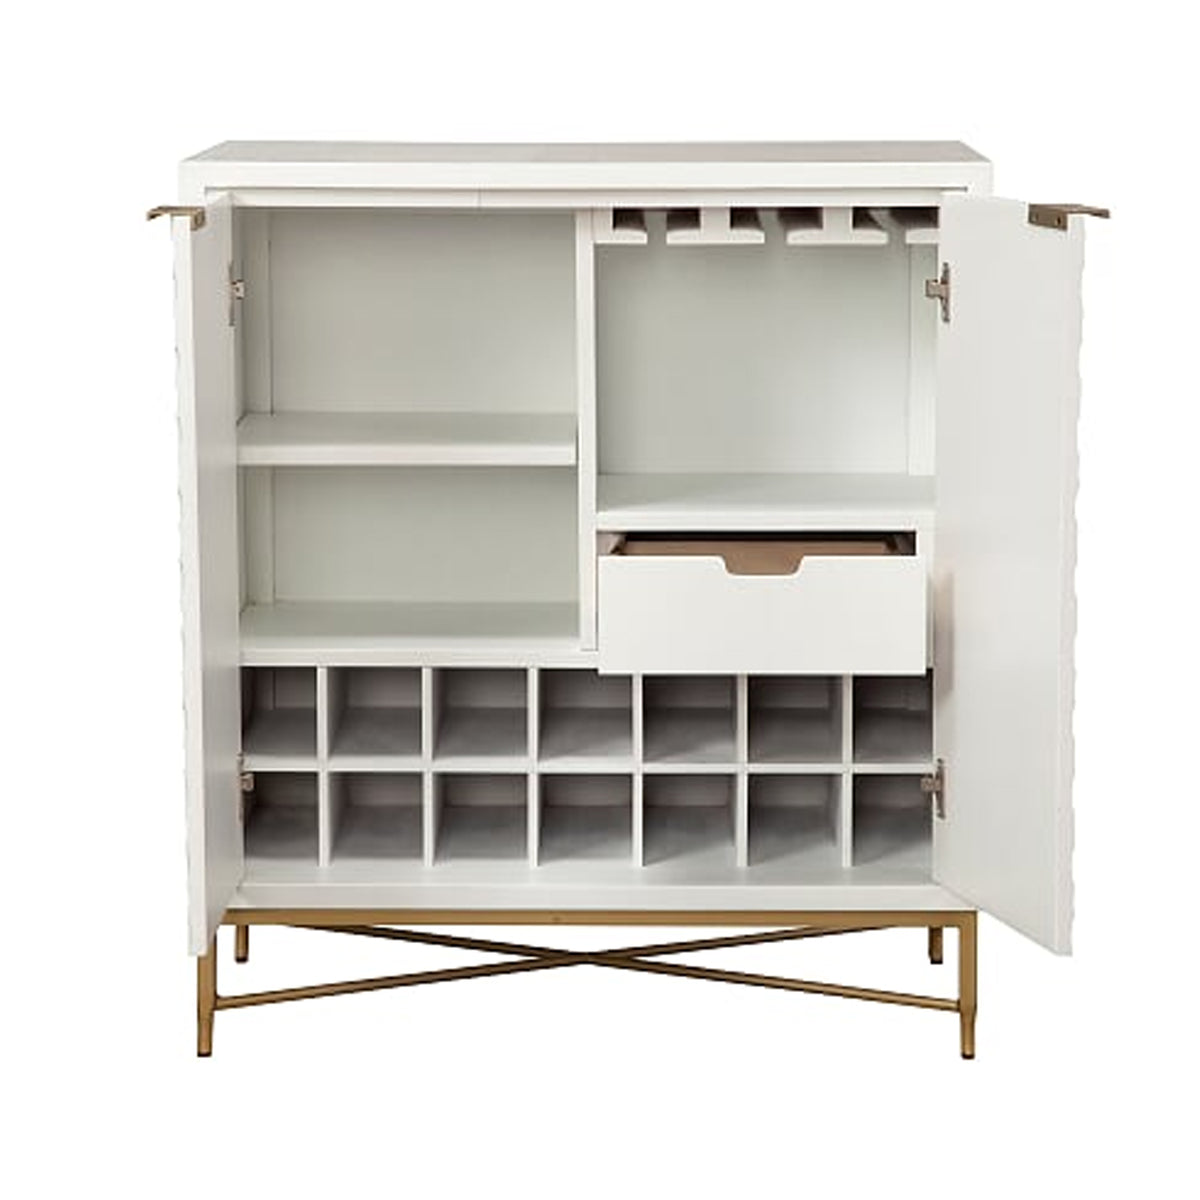 Honeycomb Design 2 Door Bar Cabinet with Metal Legs, White - BM206689